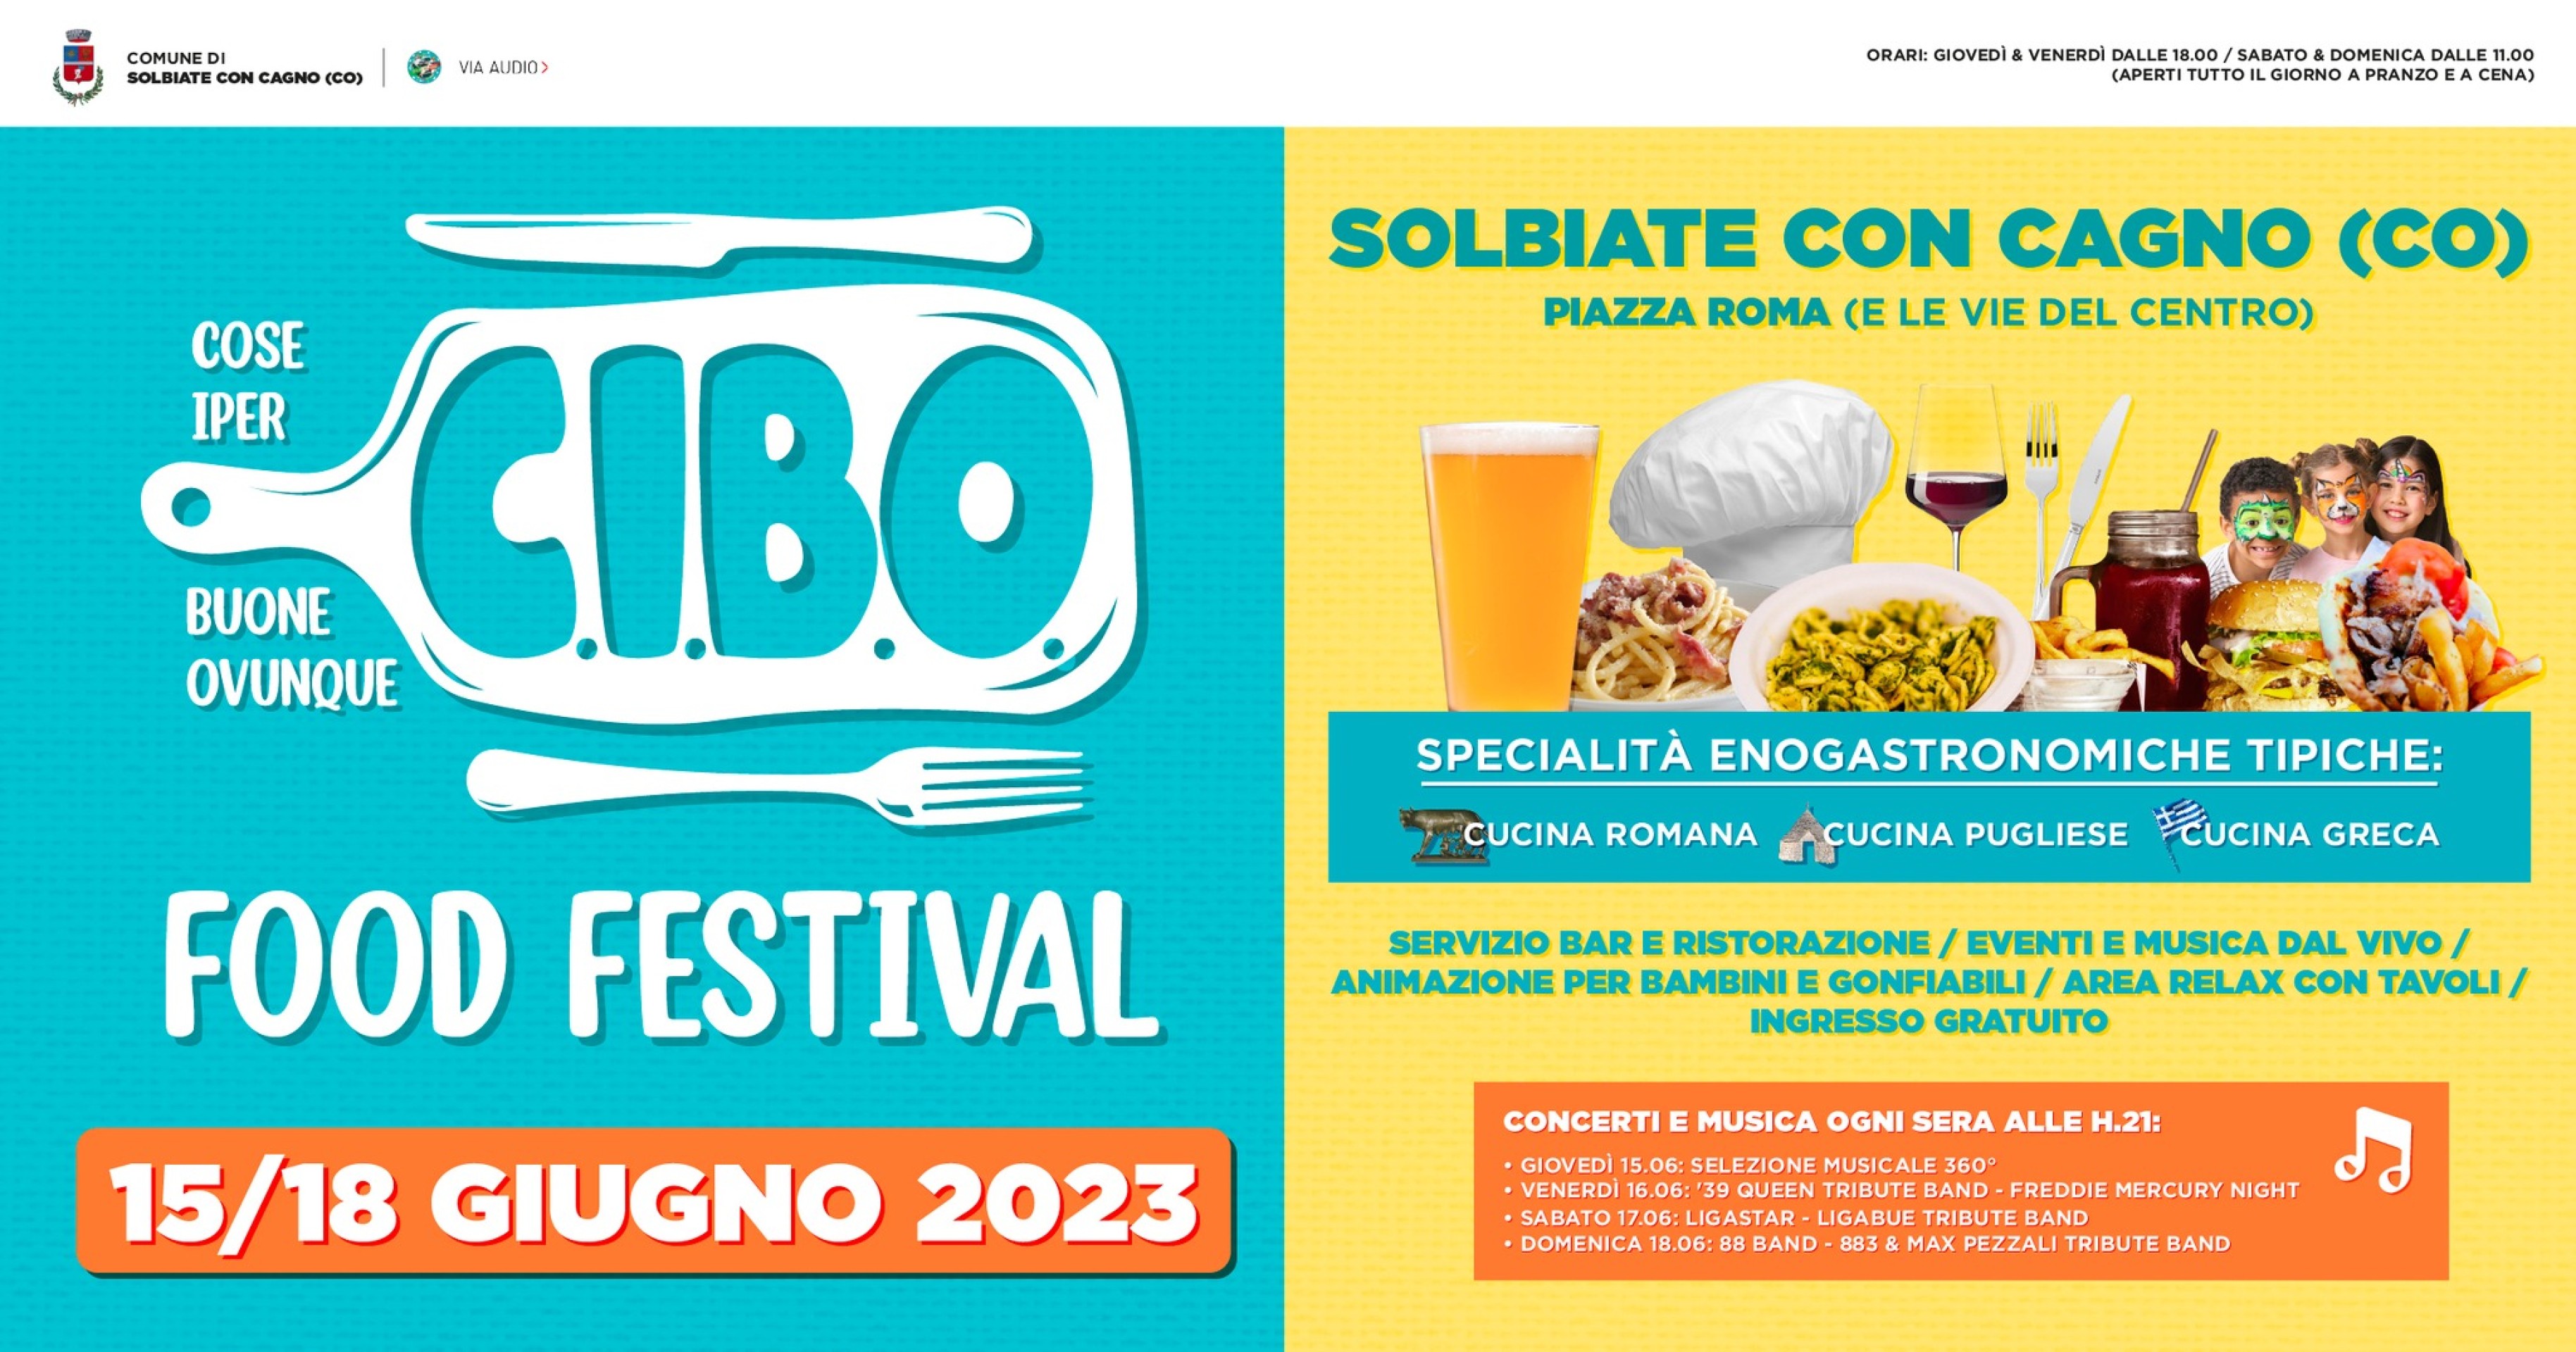 1° CIBO FOOD FESTIVAL - SOLBIATE CON CAGNO